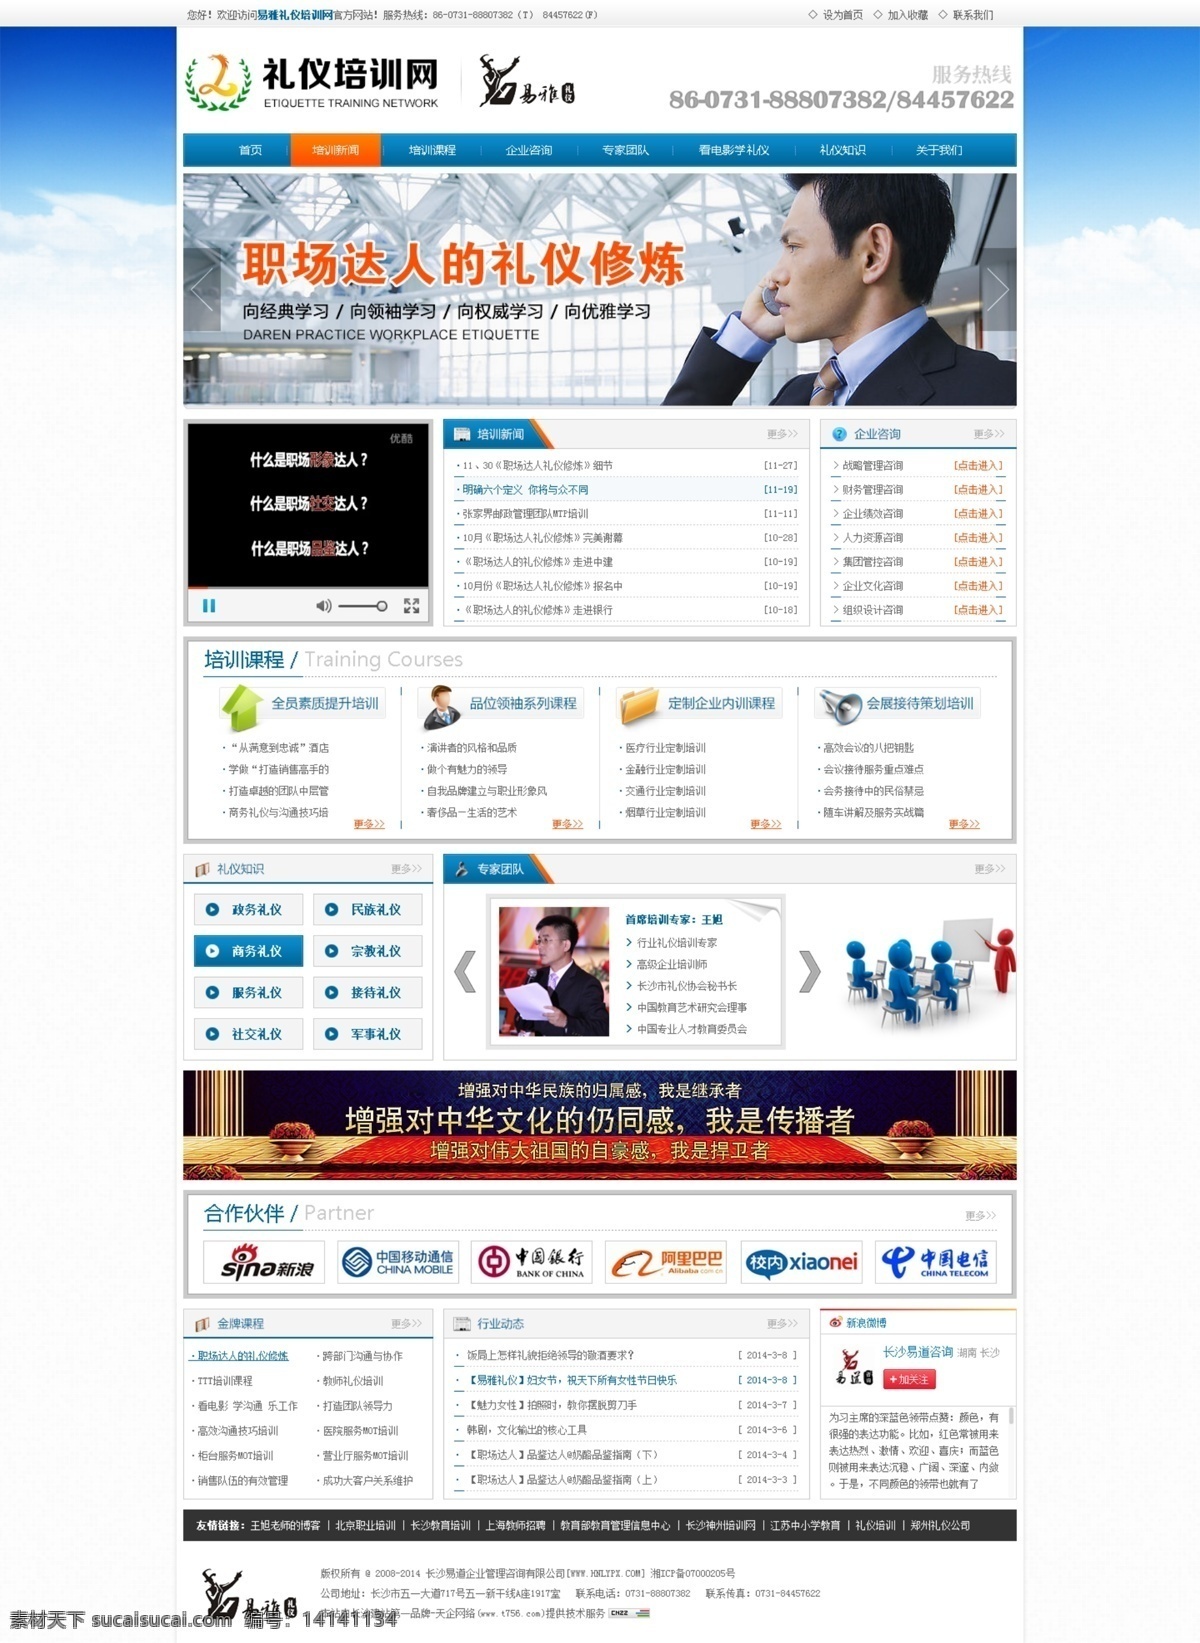 培训网 培训网站 教育培训 企业培训 礼仪培训 网页设计 web 界面设计 中文模板 白色